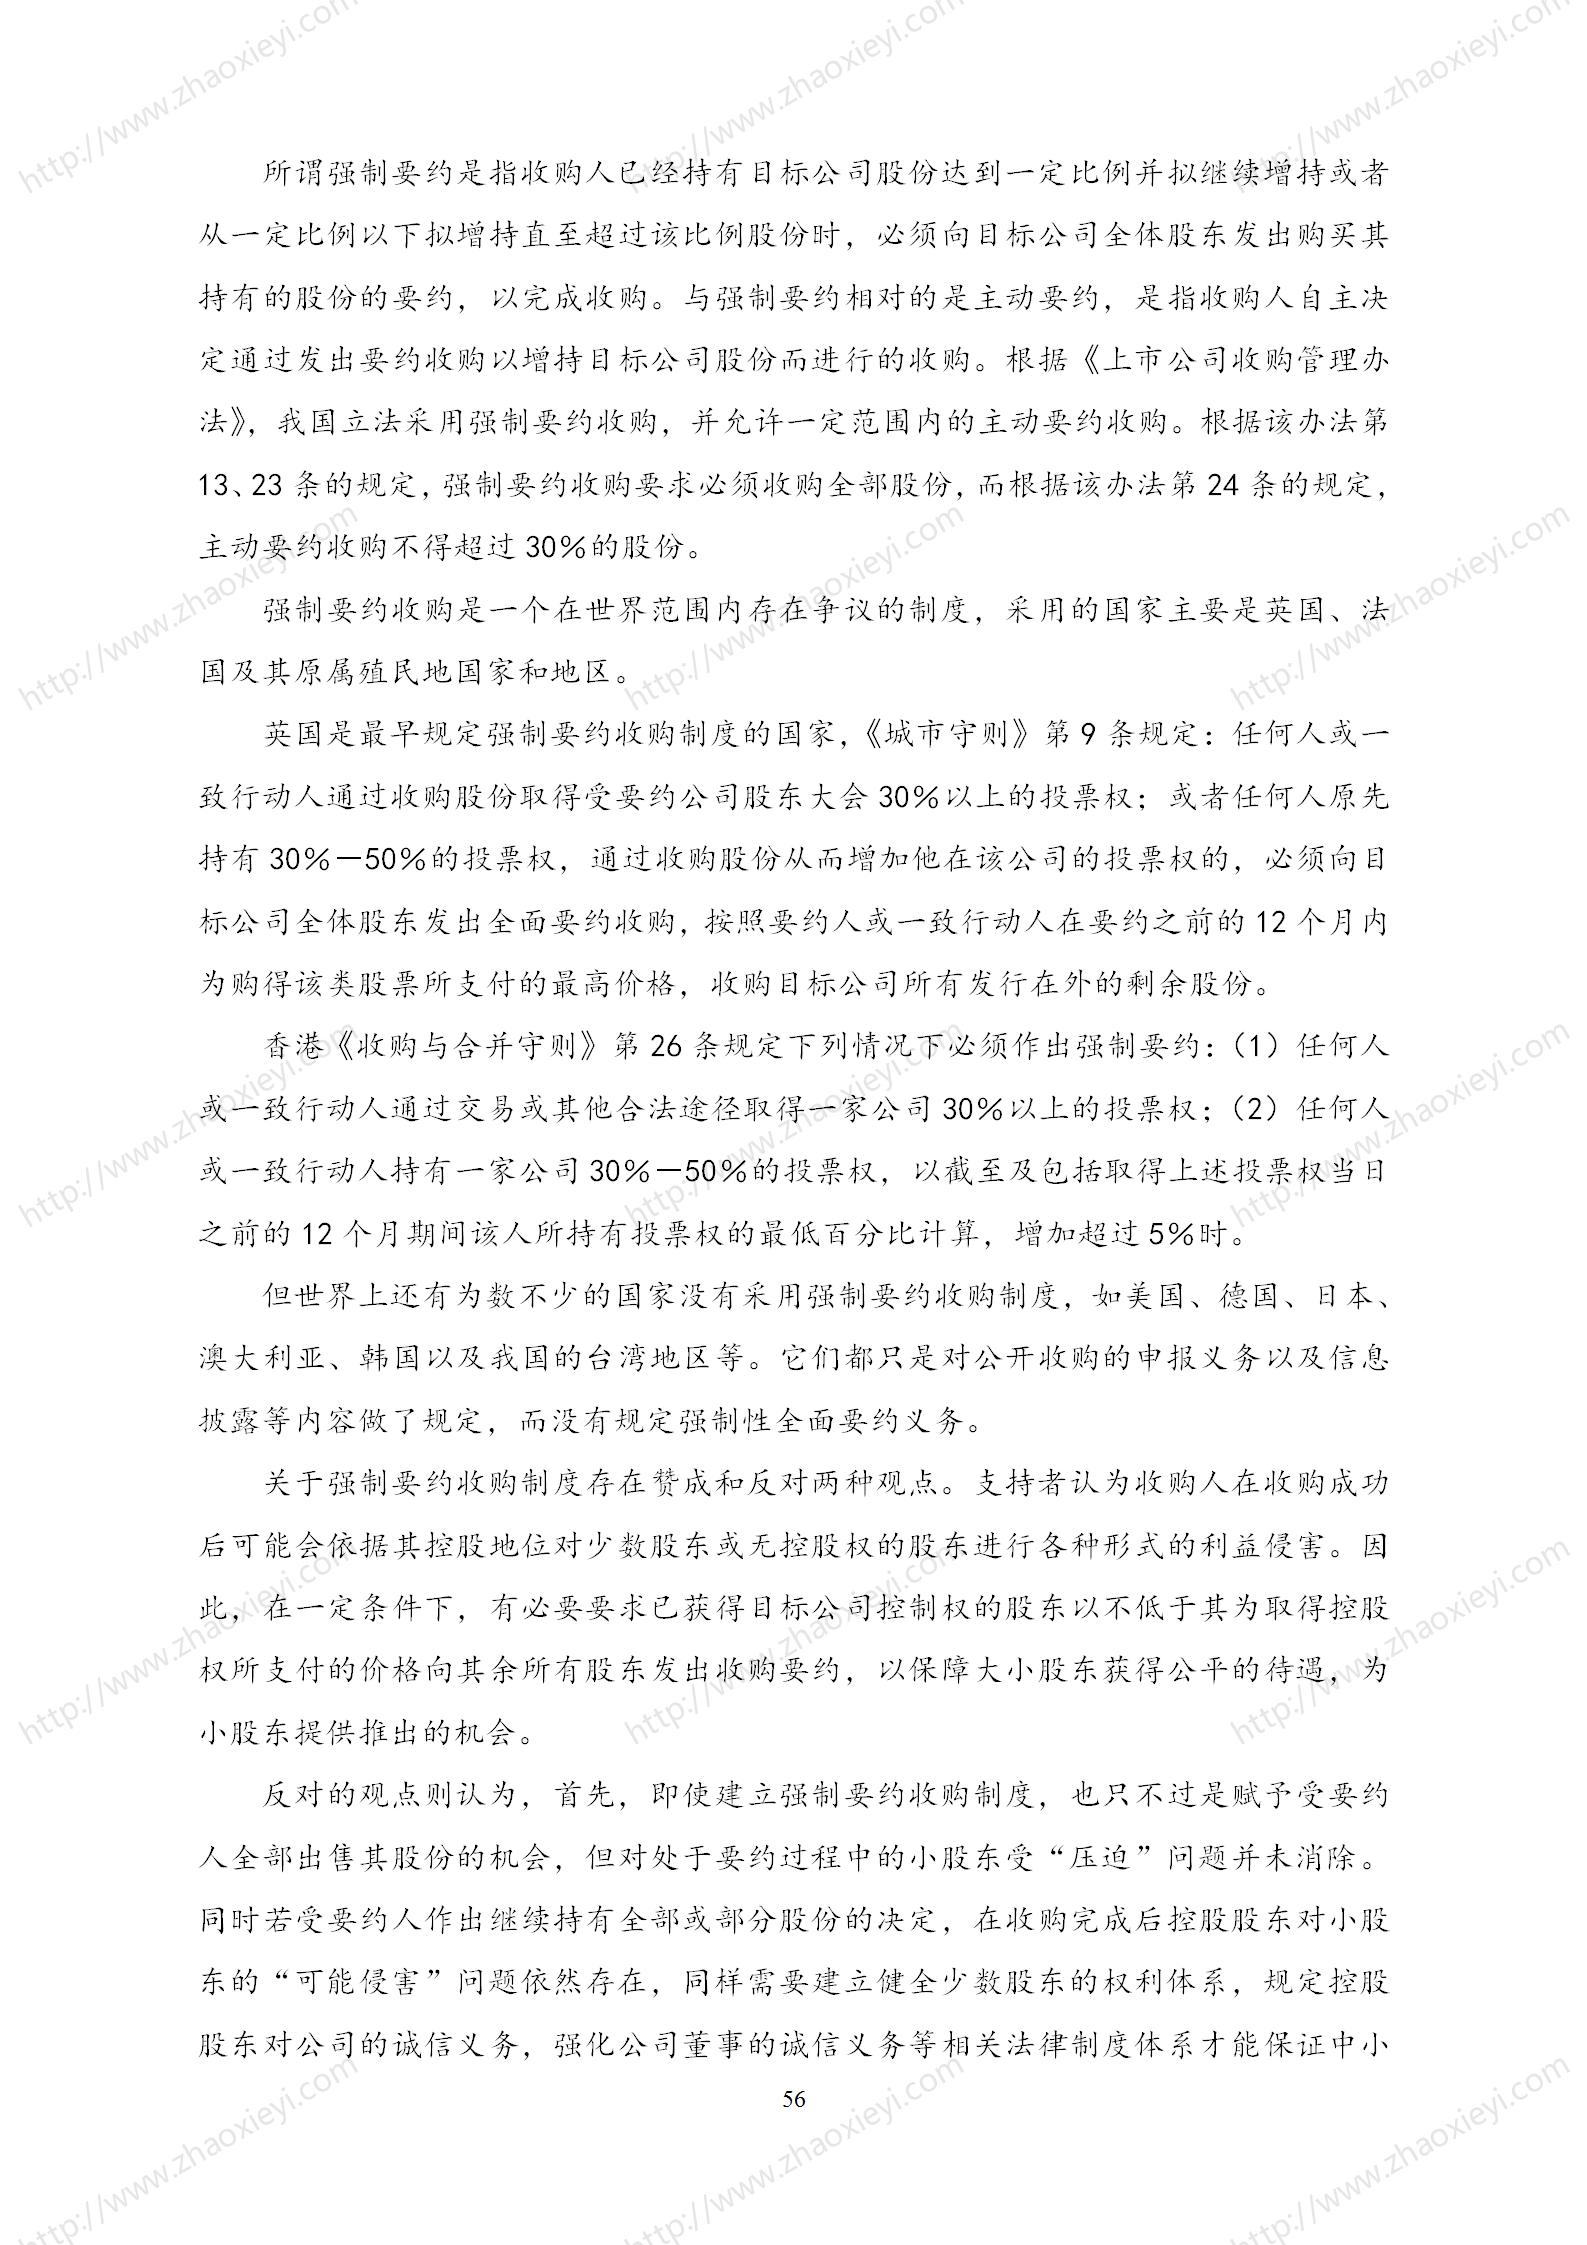 中国上市公司并购重组的模式研究_27.jpg